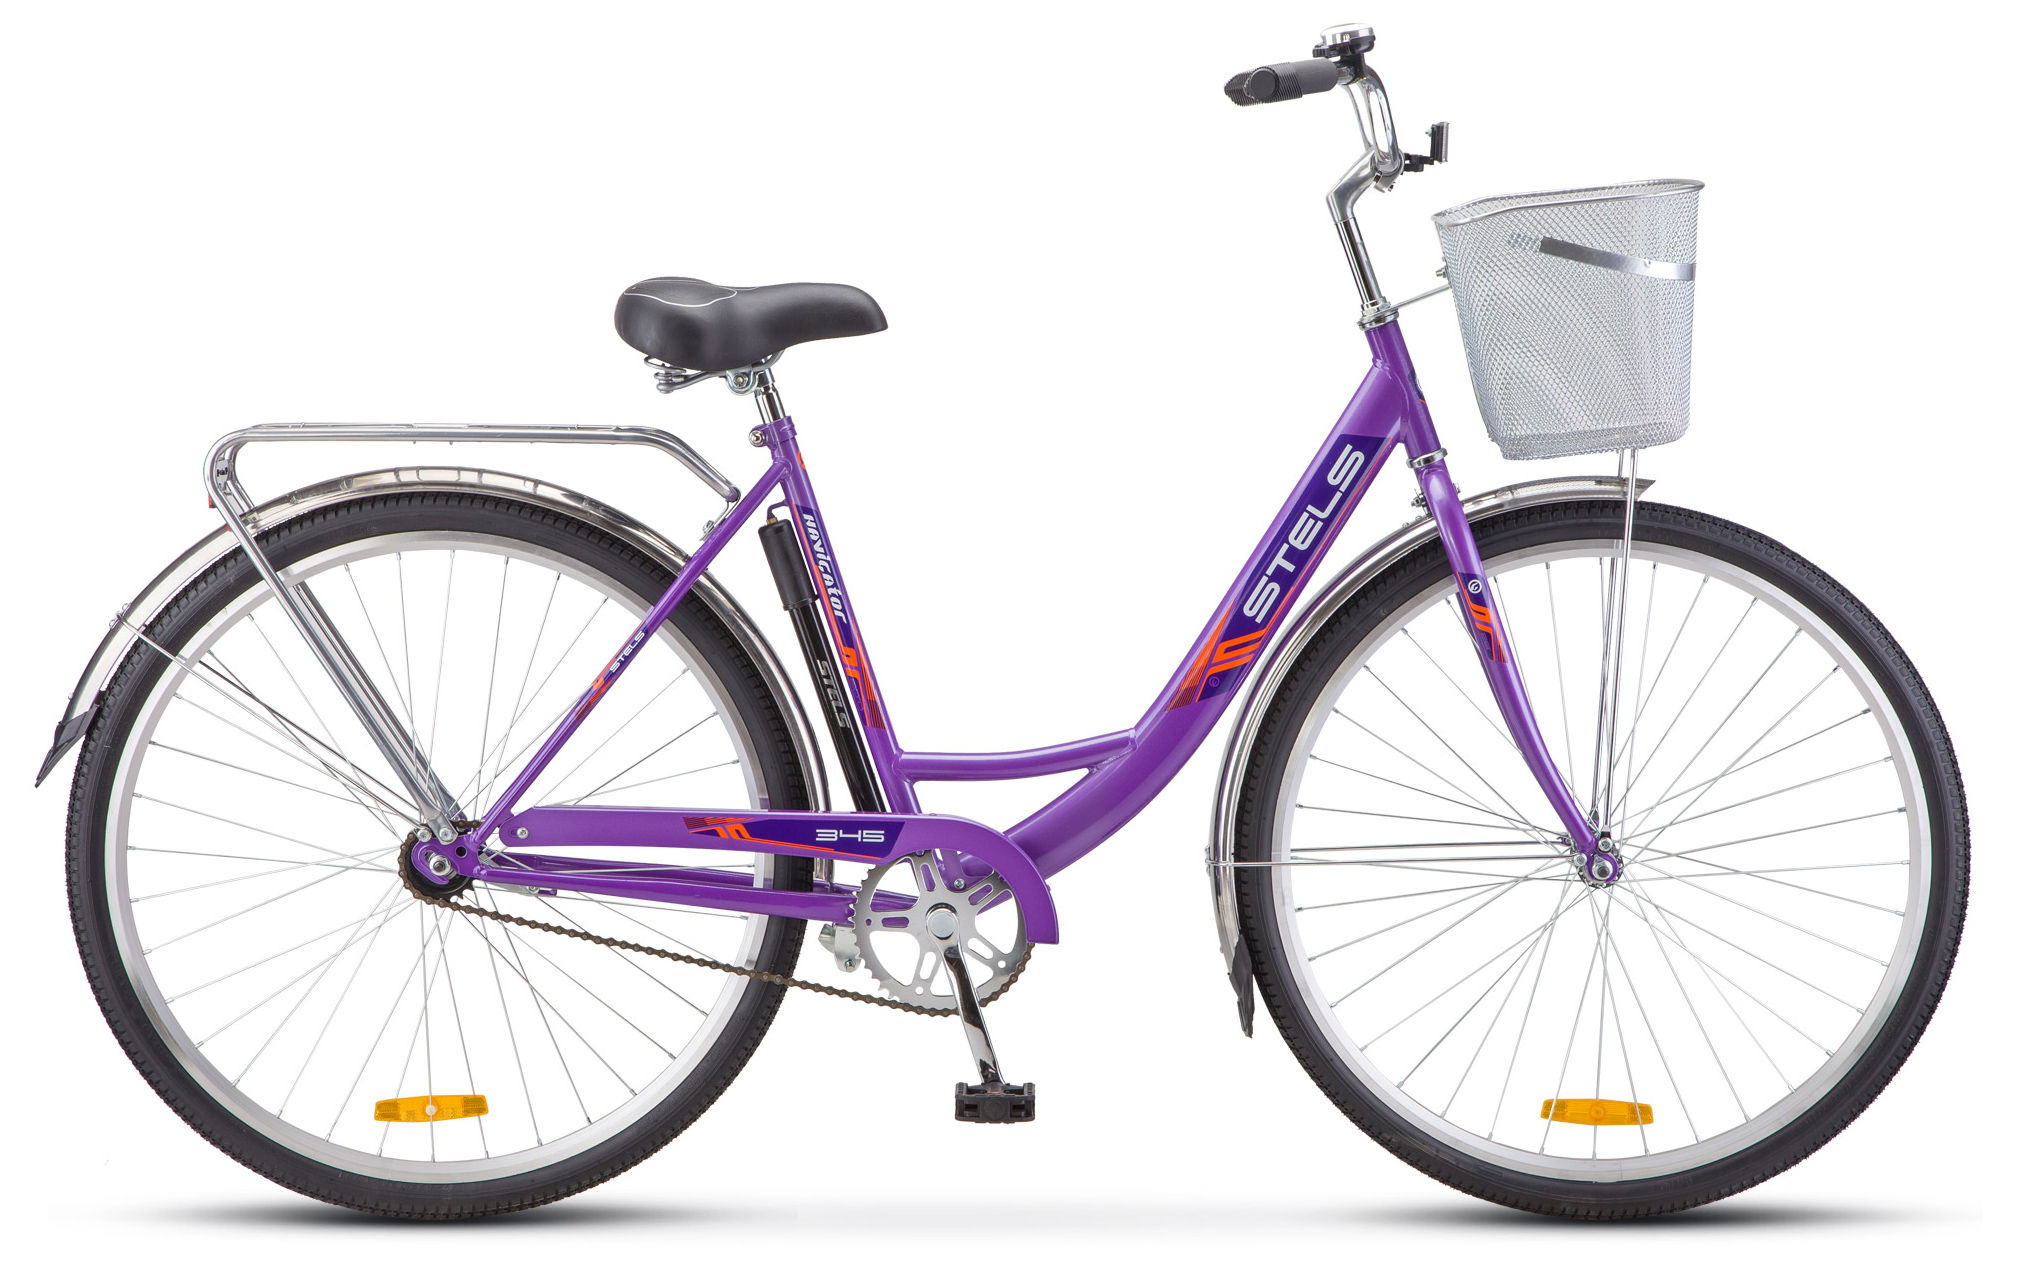  Отзывы о Женском велосипеде Stels Navigator 345 28 (Z010) 2019